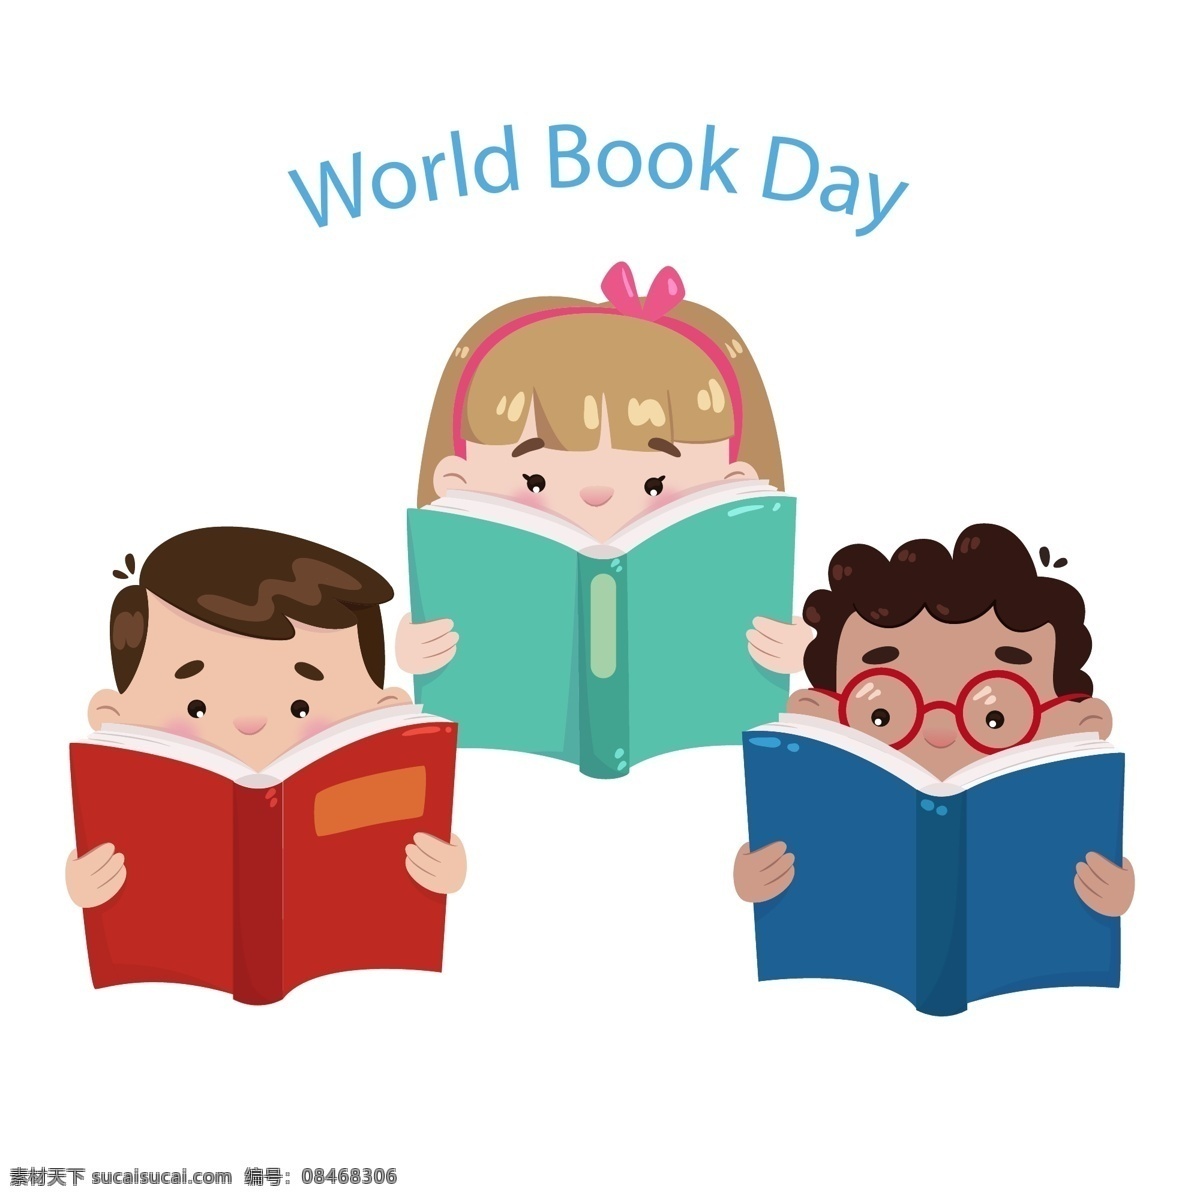 可爱 读书 儿童 矢量 世界图书日 男孩 女孩 书籍 world book day 动漫动画 动漫人物